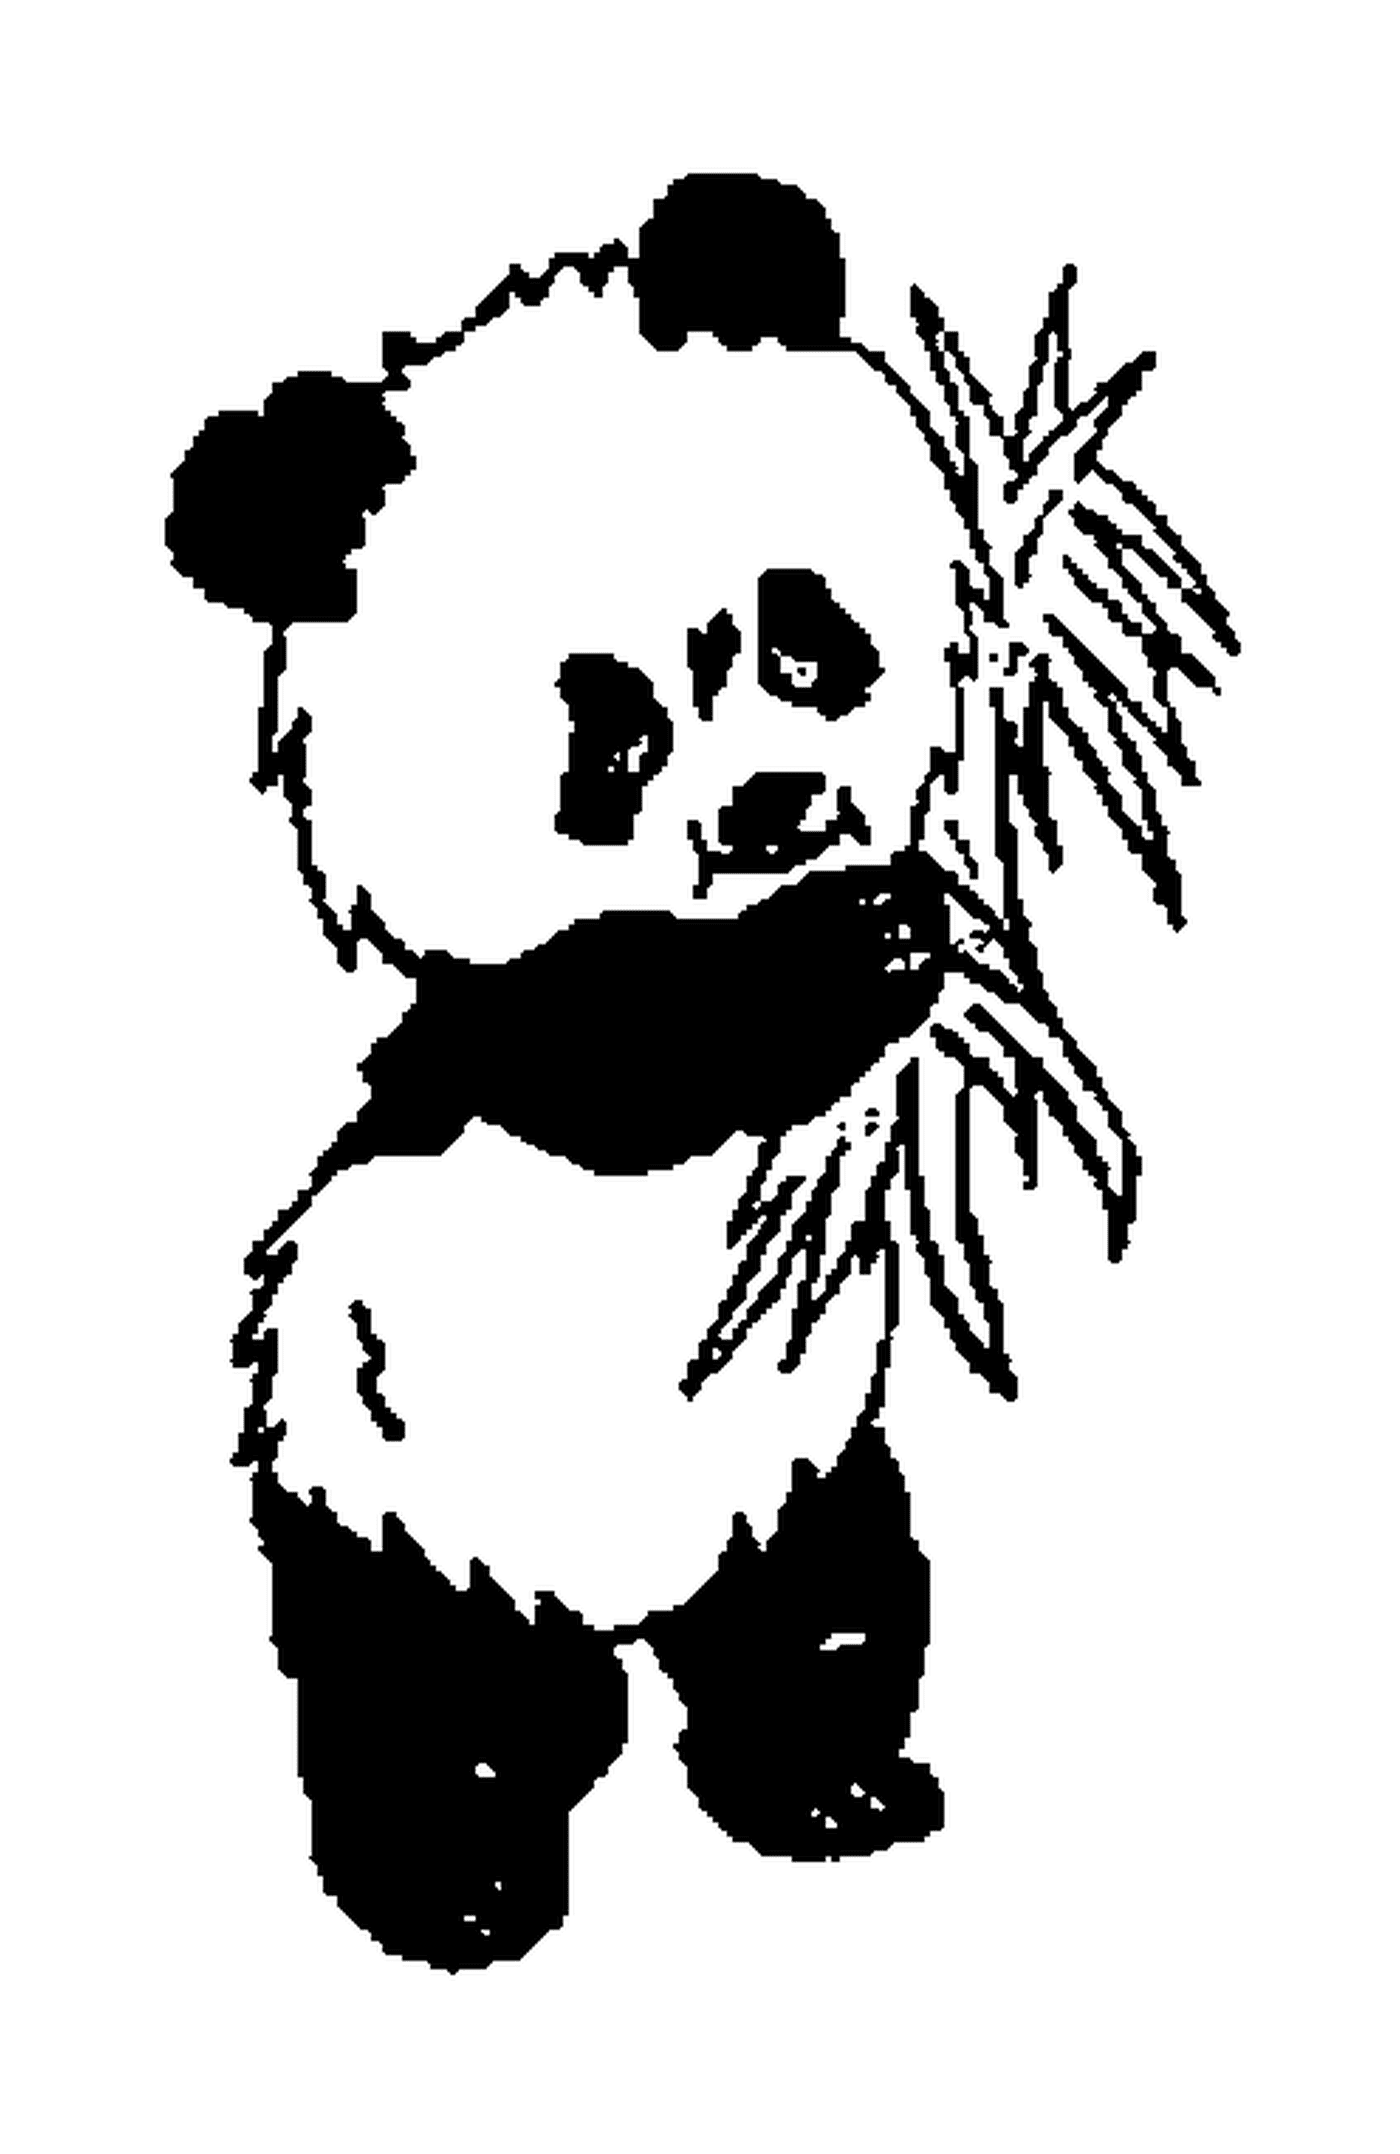  Панда стояла на сладких листьях 